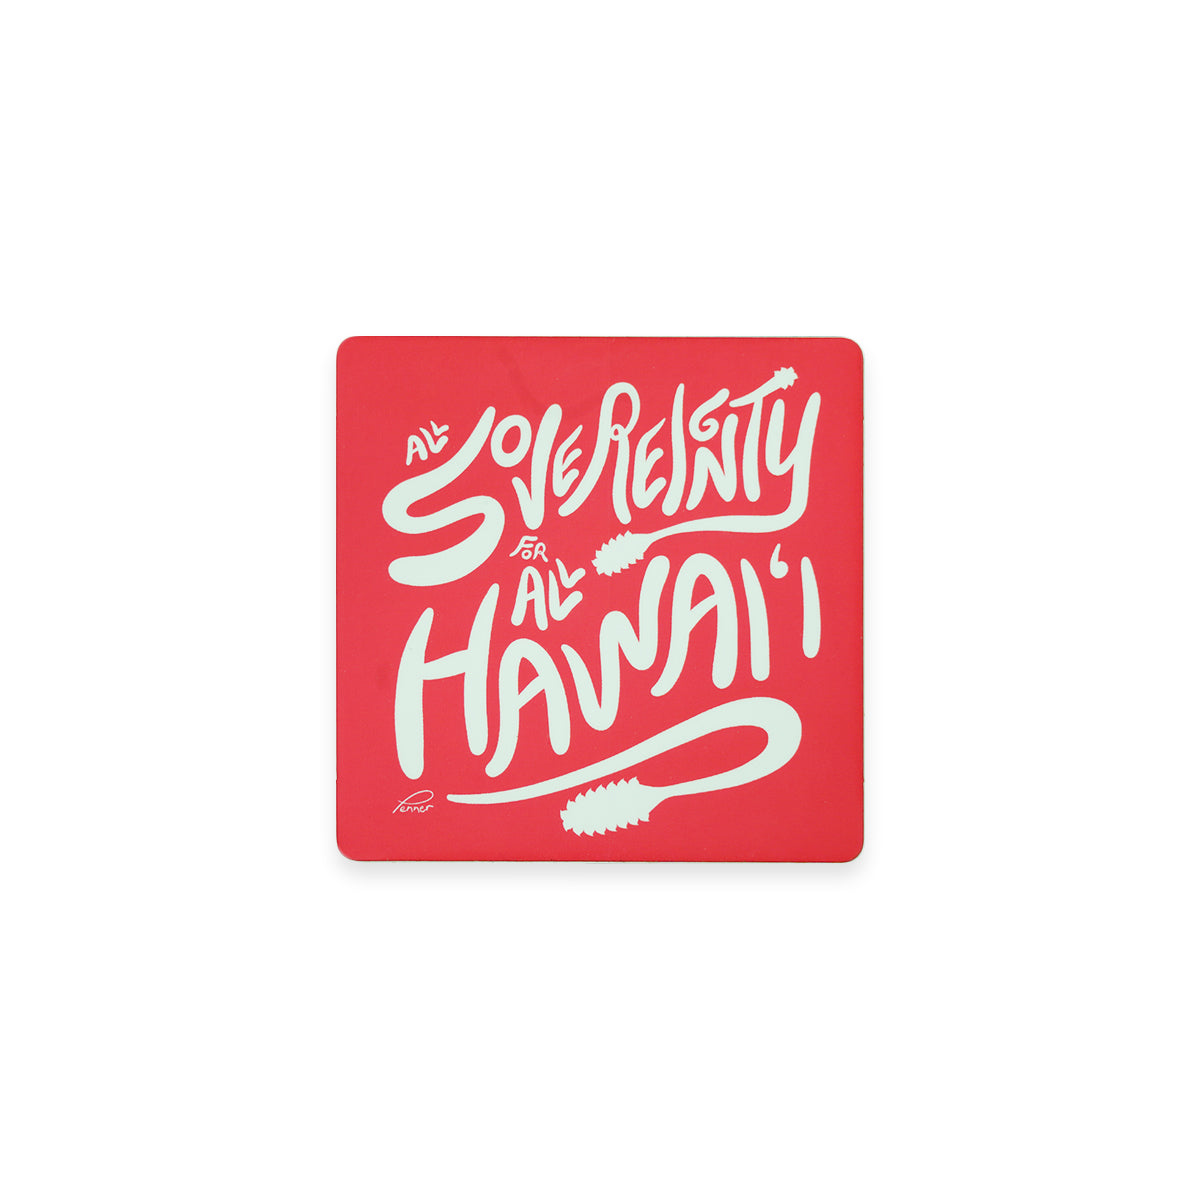 All Sovereignty for All Hawaiʻi Pepili - Original Art 3" Vinyl Sticker